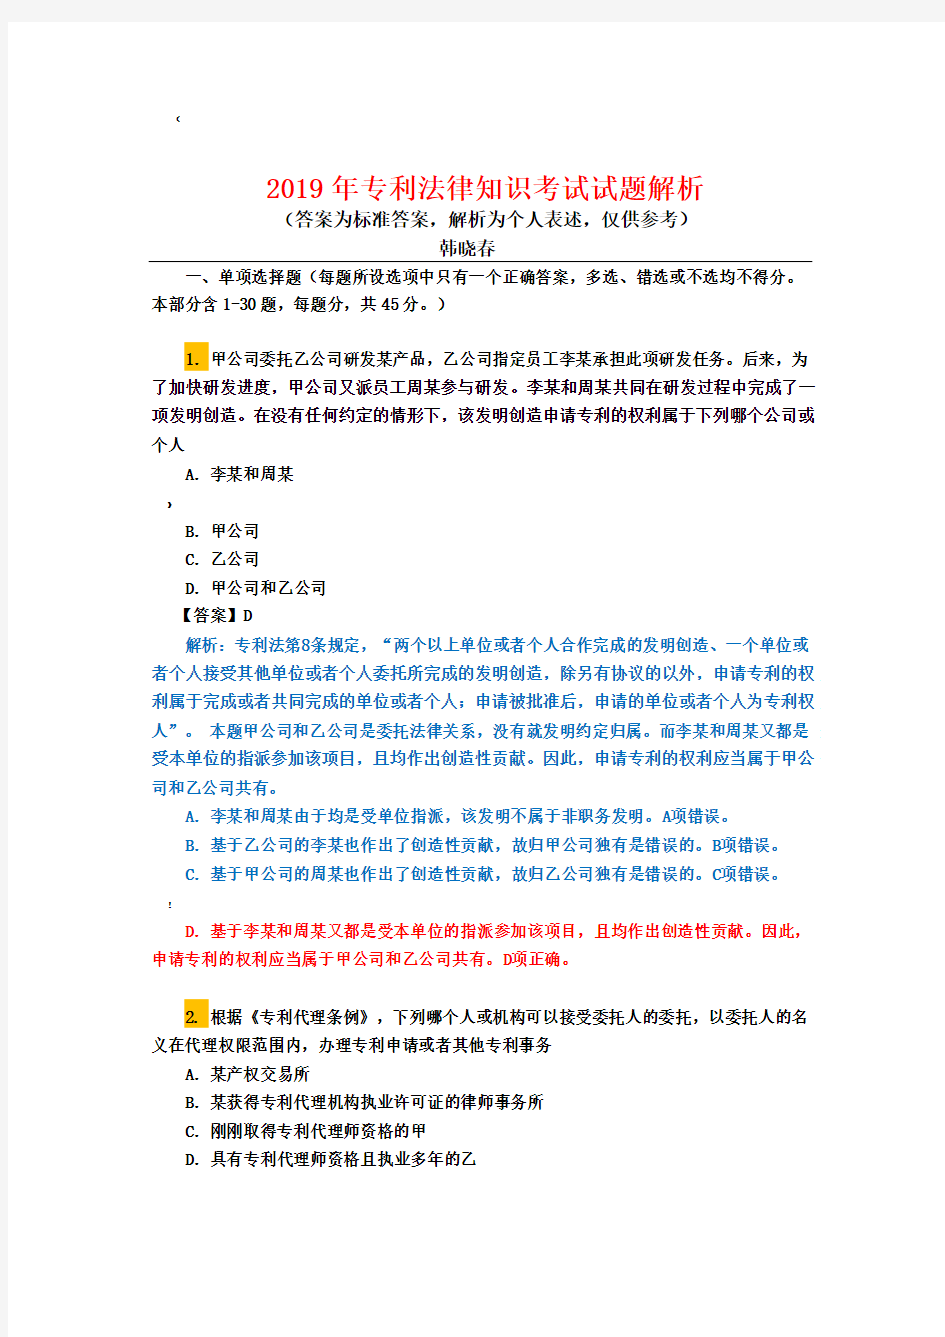 2019年专利法考试试题解析(韩晓春)